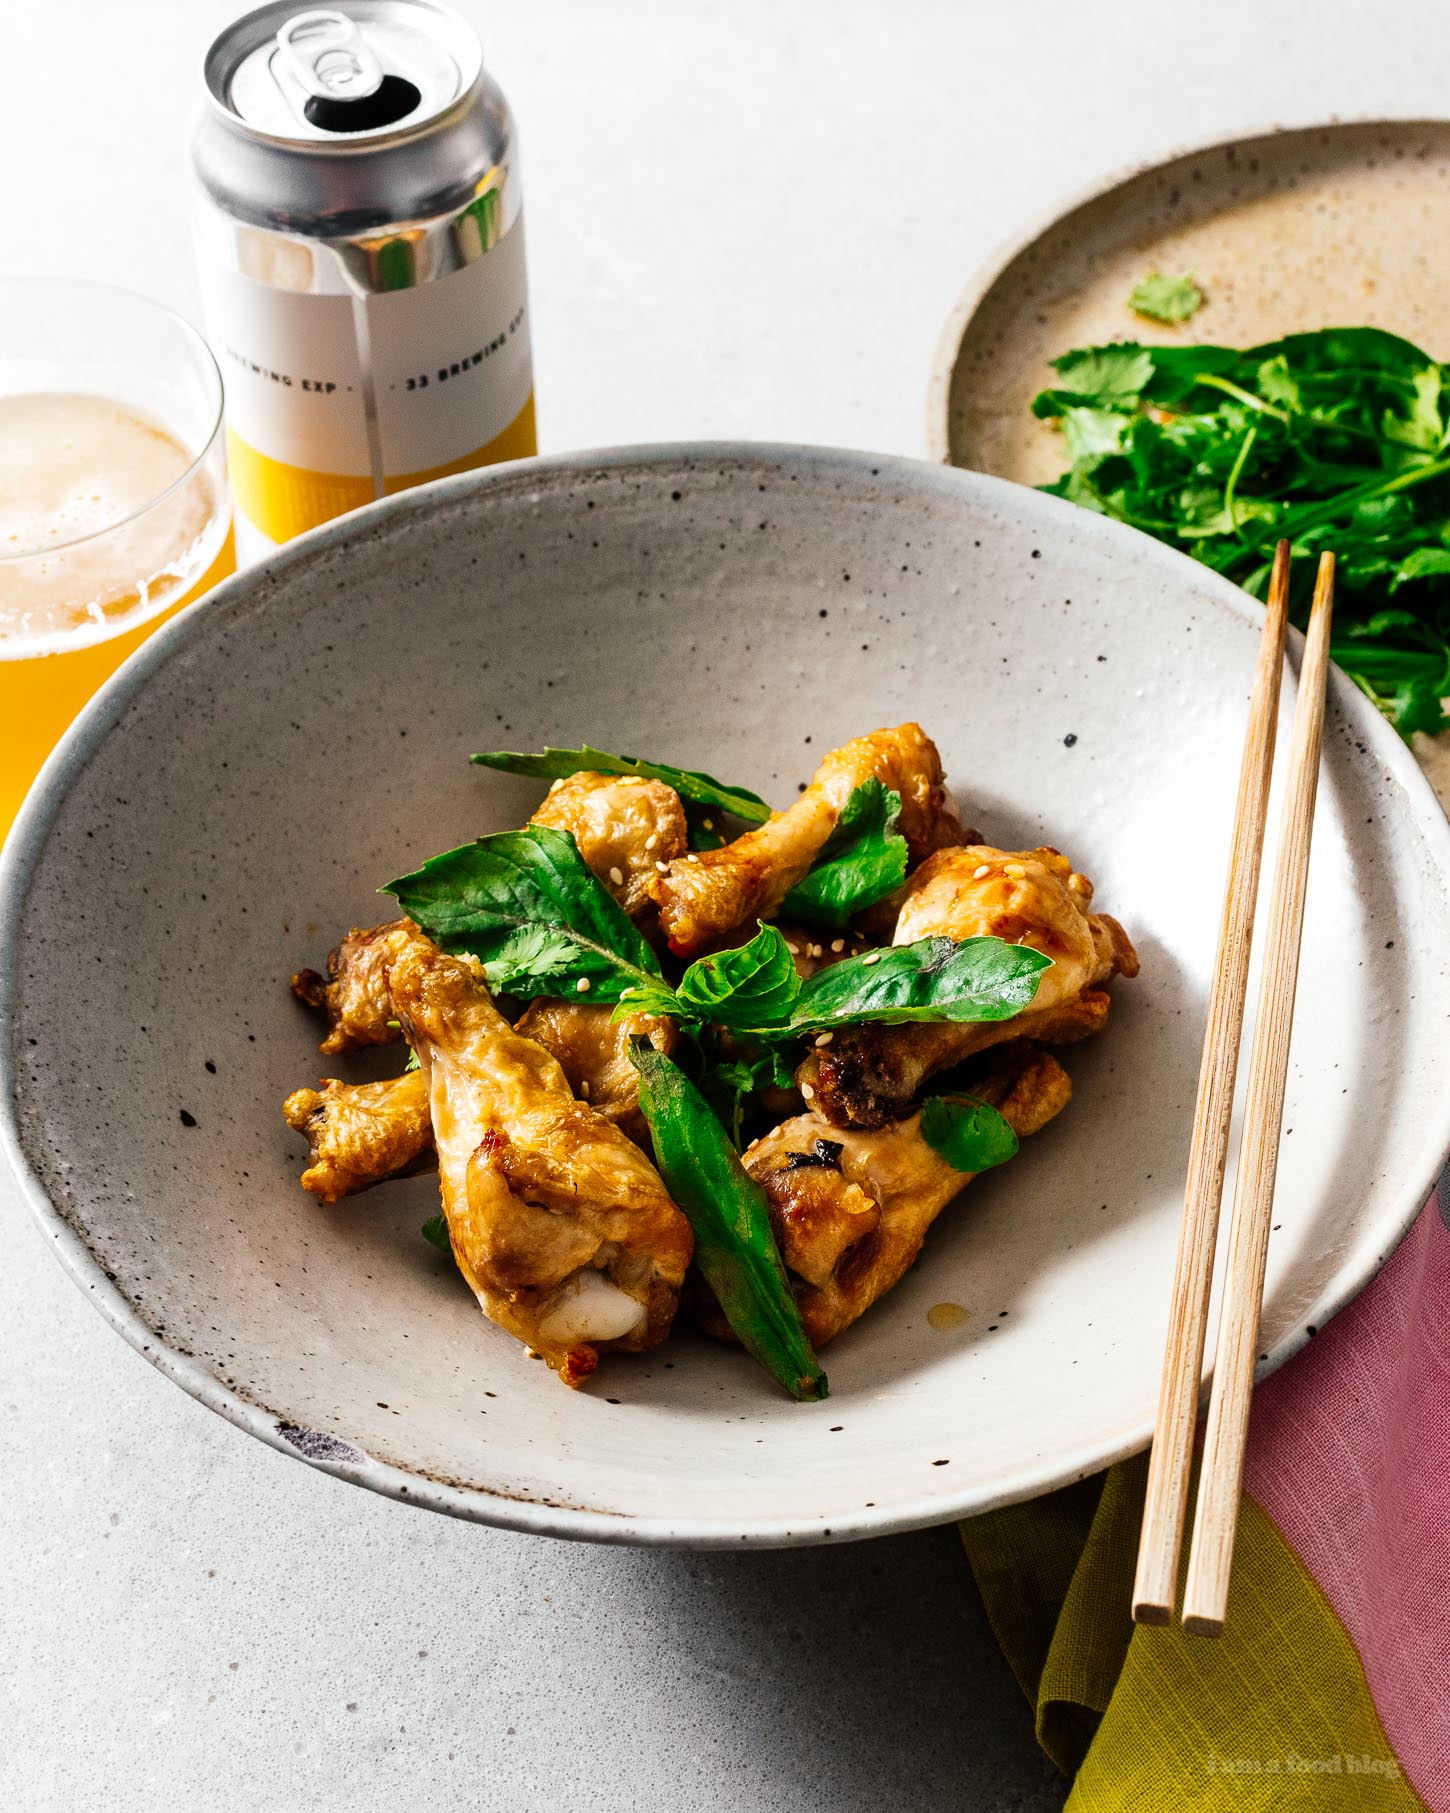 ¡Las alitas de pollo fritas al aire son tan crujientes y tan seguro que no creerías que no estaban fritas!  Lástima y tan fácil.  Cómelos desnudos, con sal y pimienta, o échalos en salsa de pescado vietnamita salada, agridulce y que te hará pedir más.  #airfryer #chickenwings #wings #airfryerwings #recipes #dinner #appies #vietnamesefood